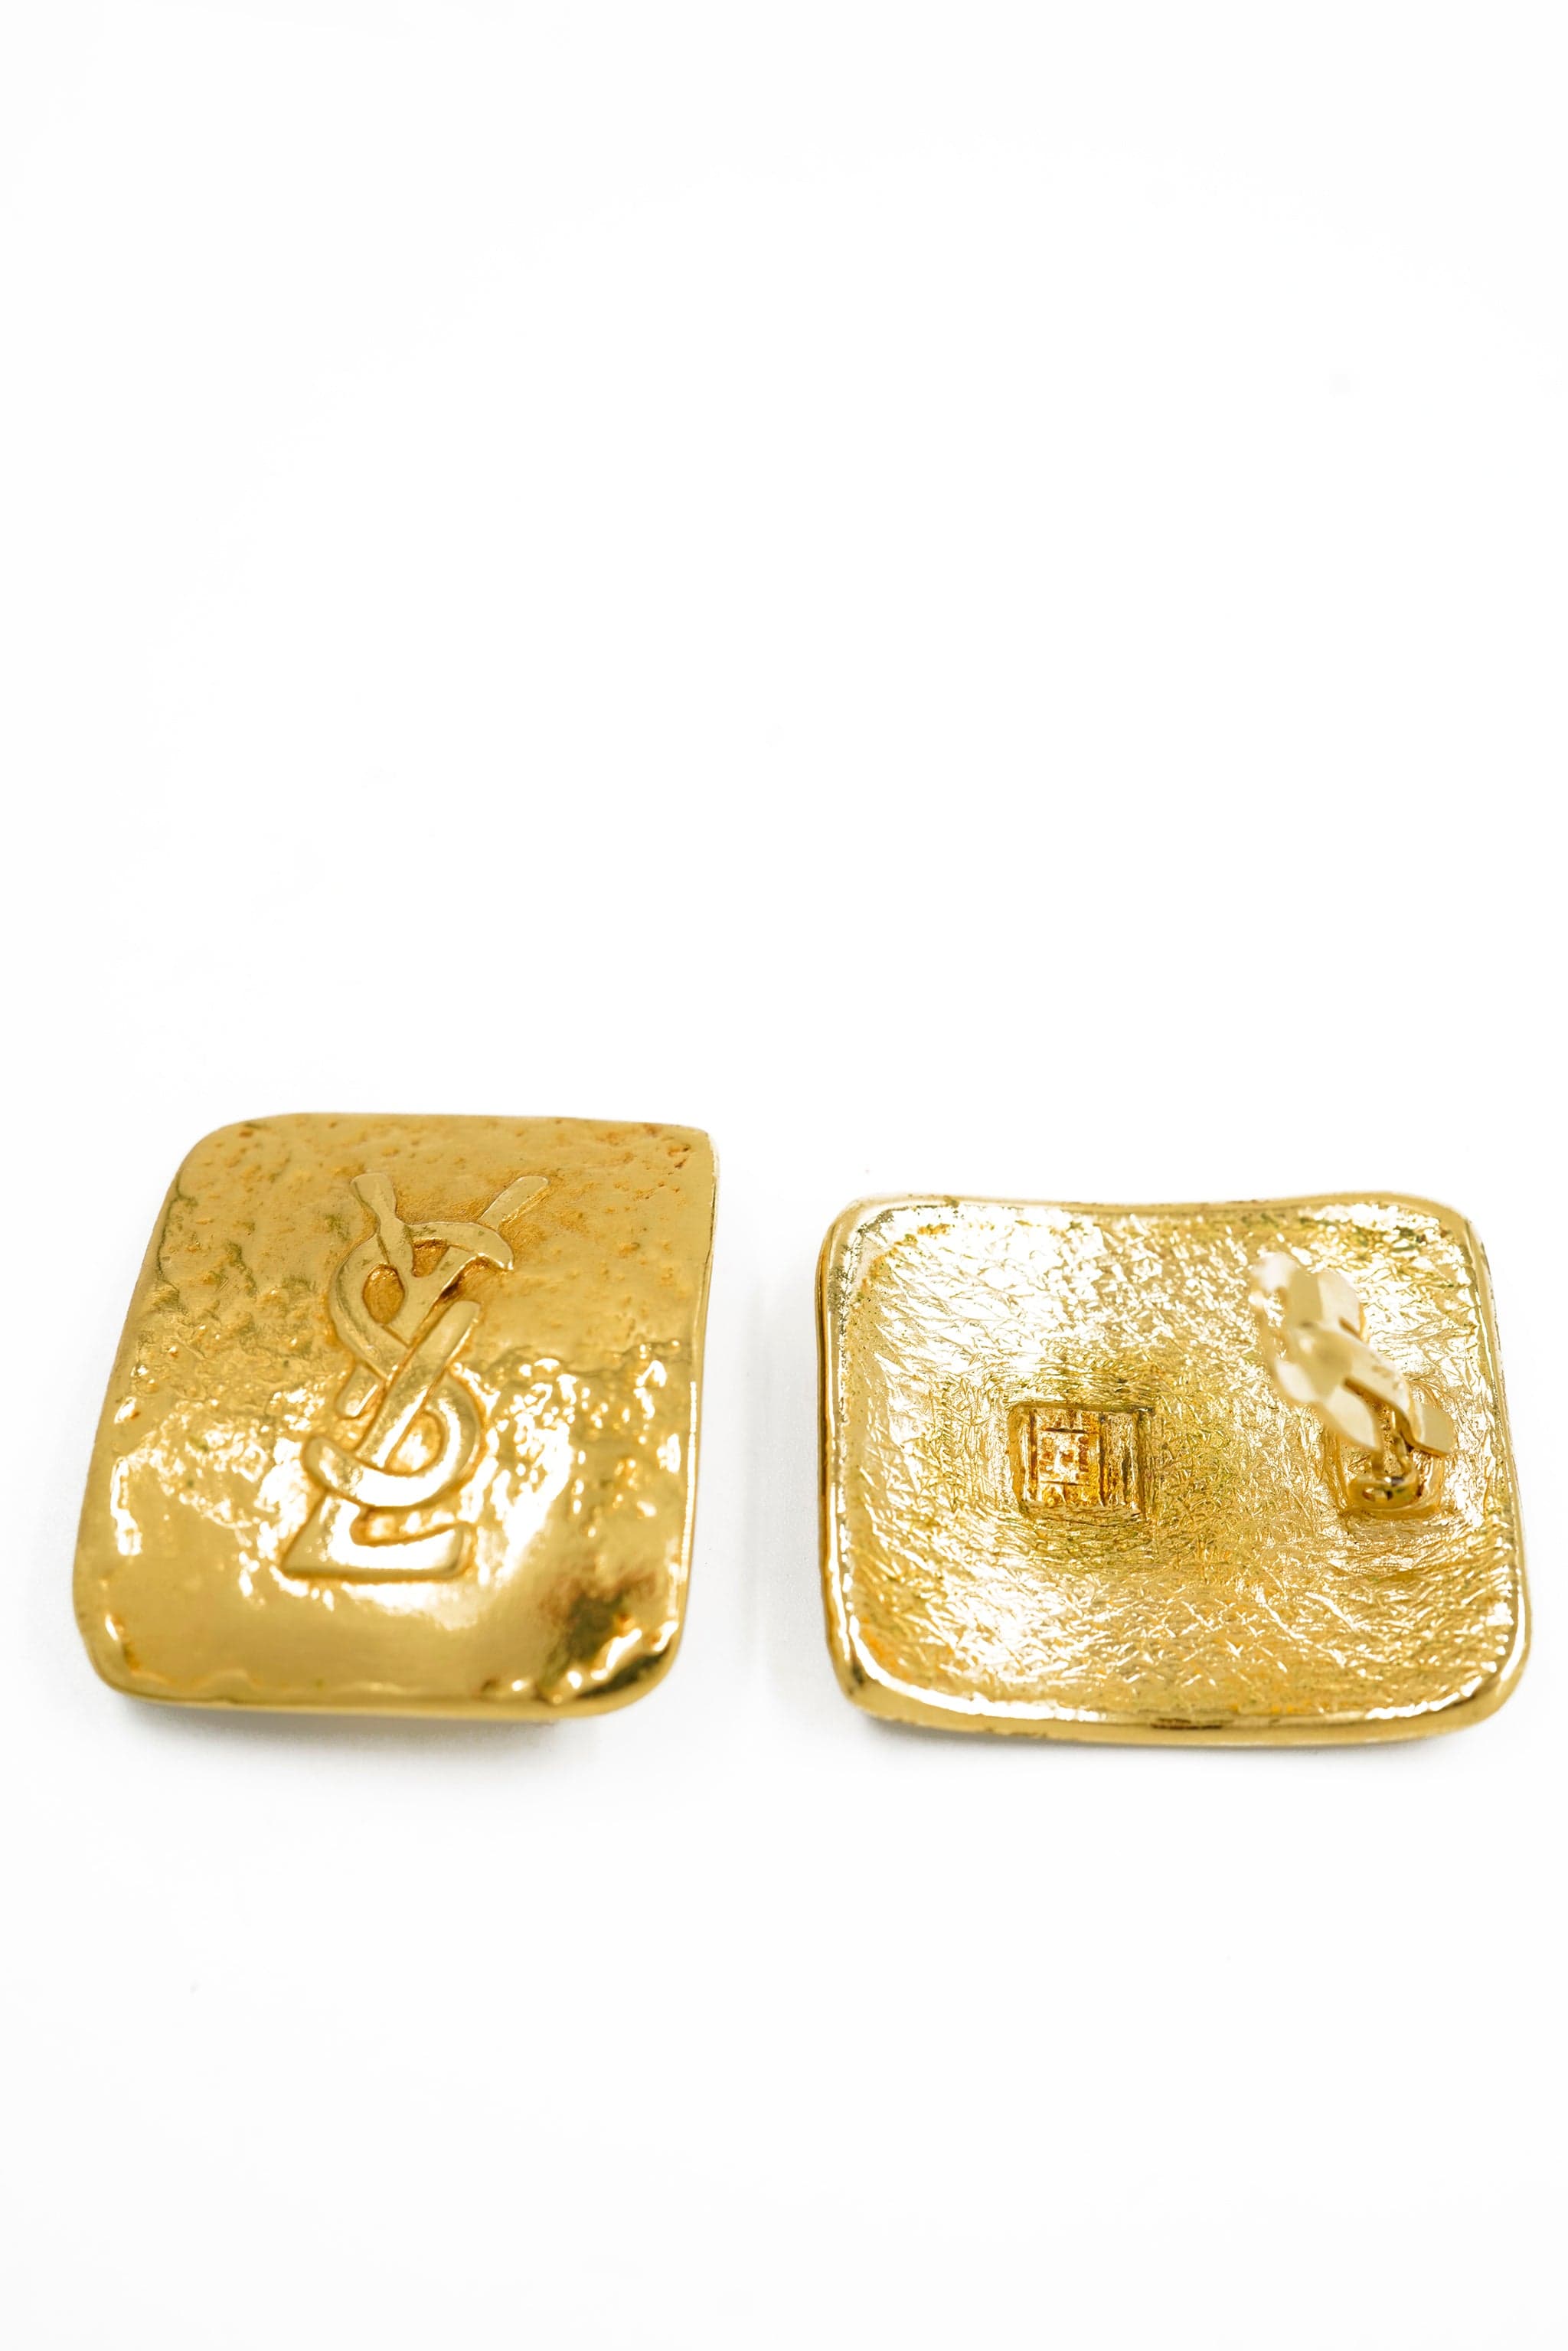 Yves Saint Laurent YSL rectangular logo earrings - AWL4199